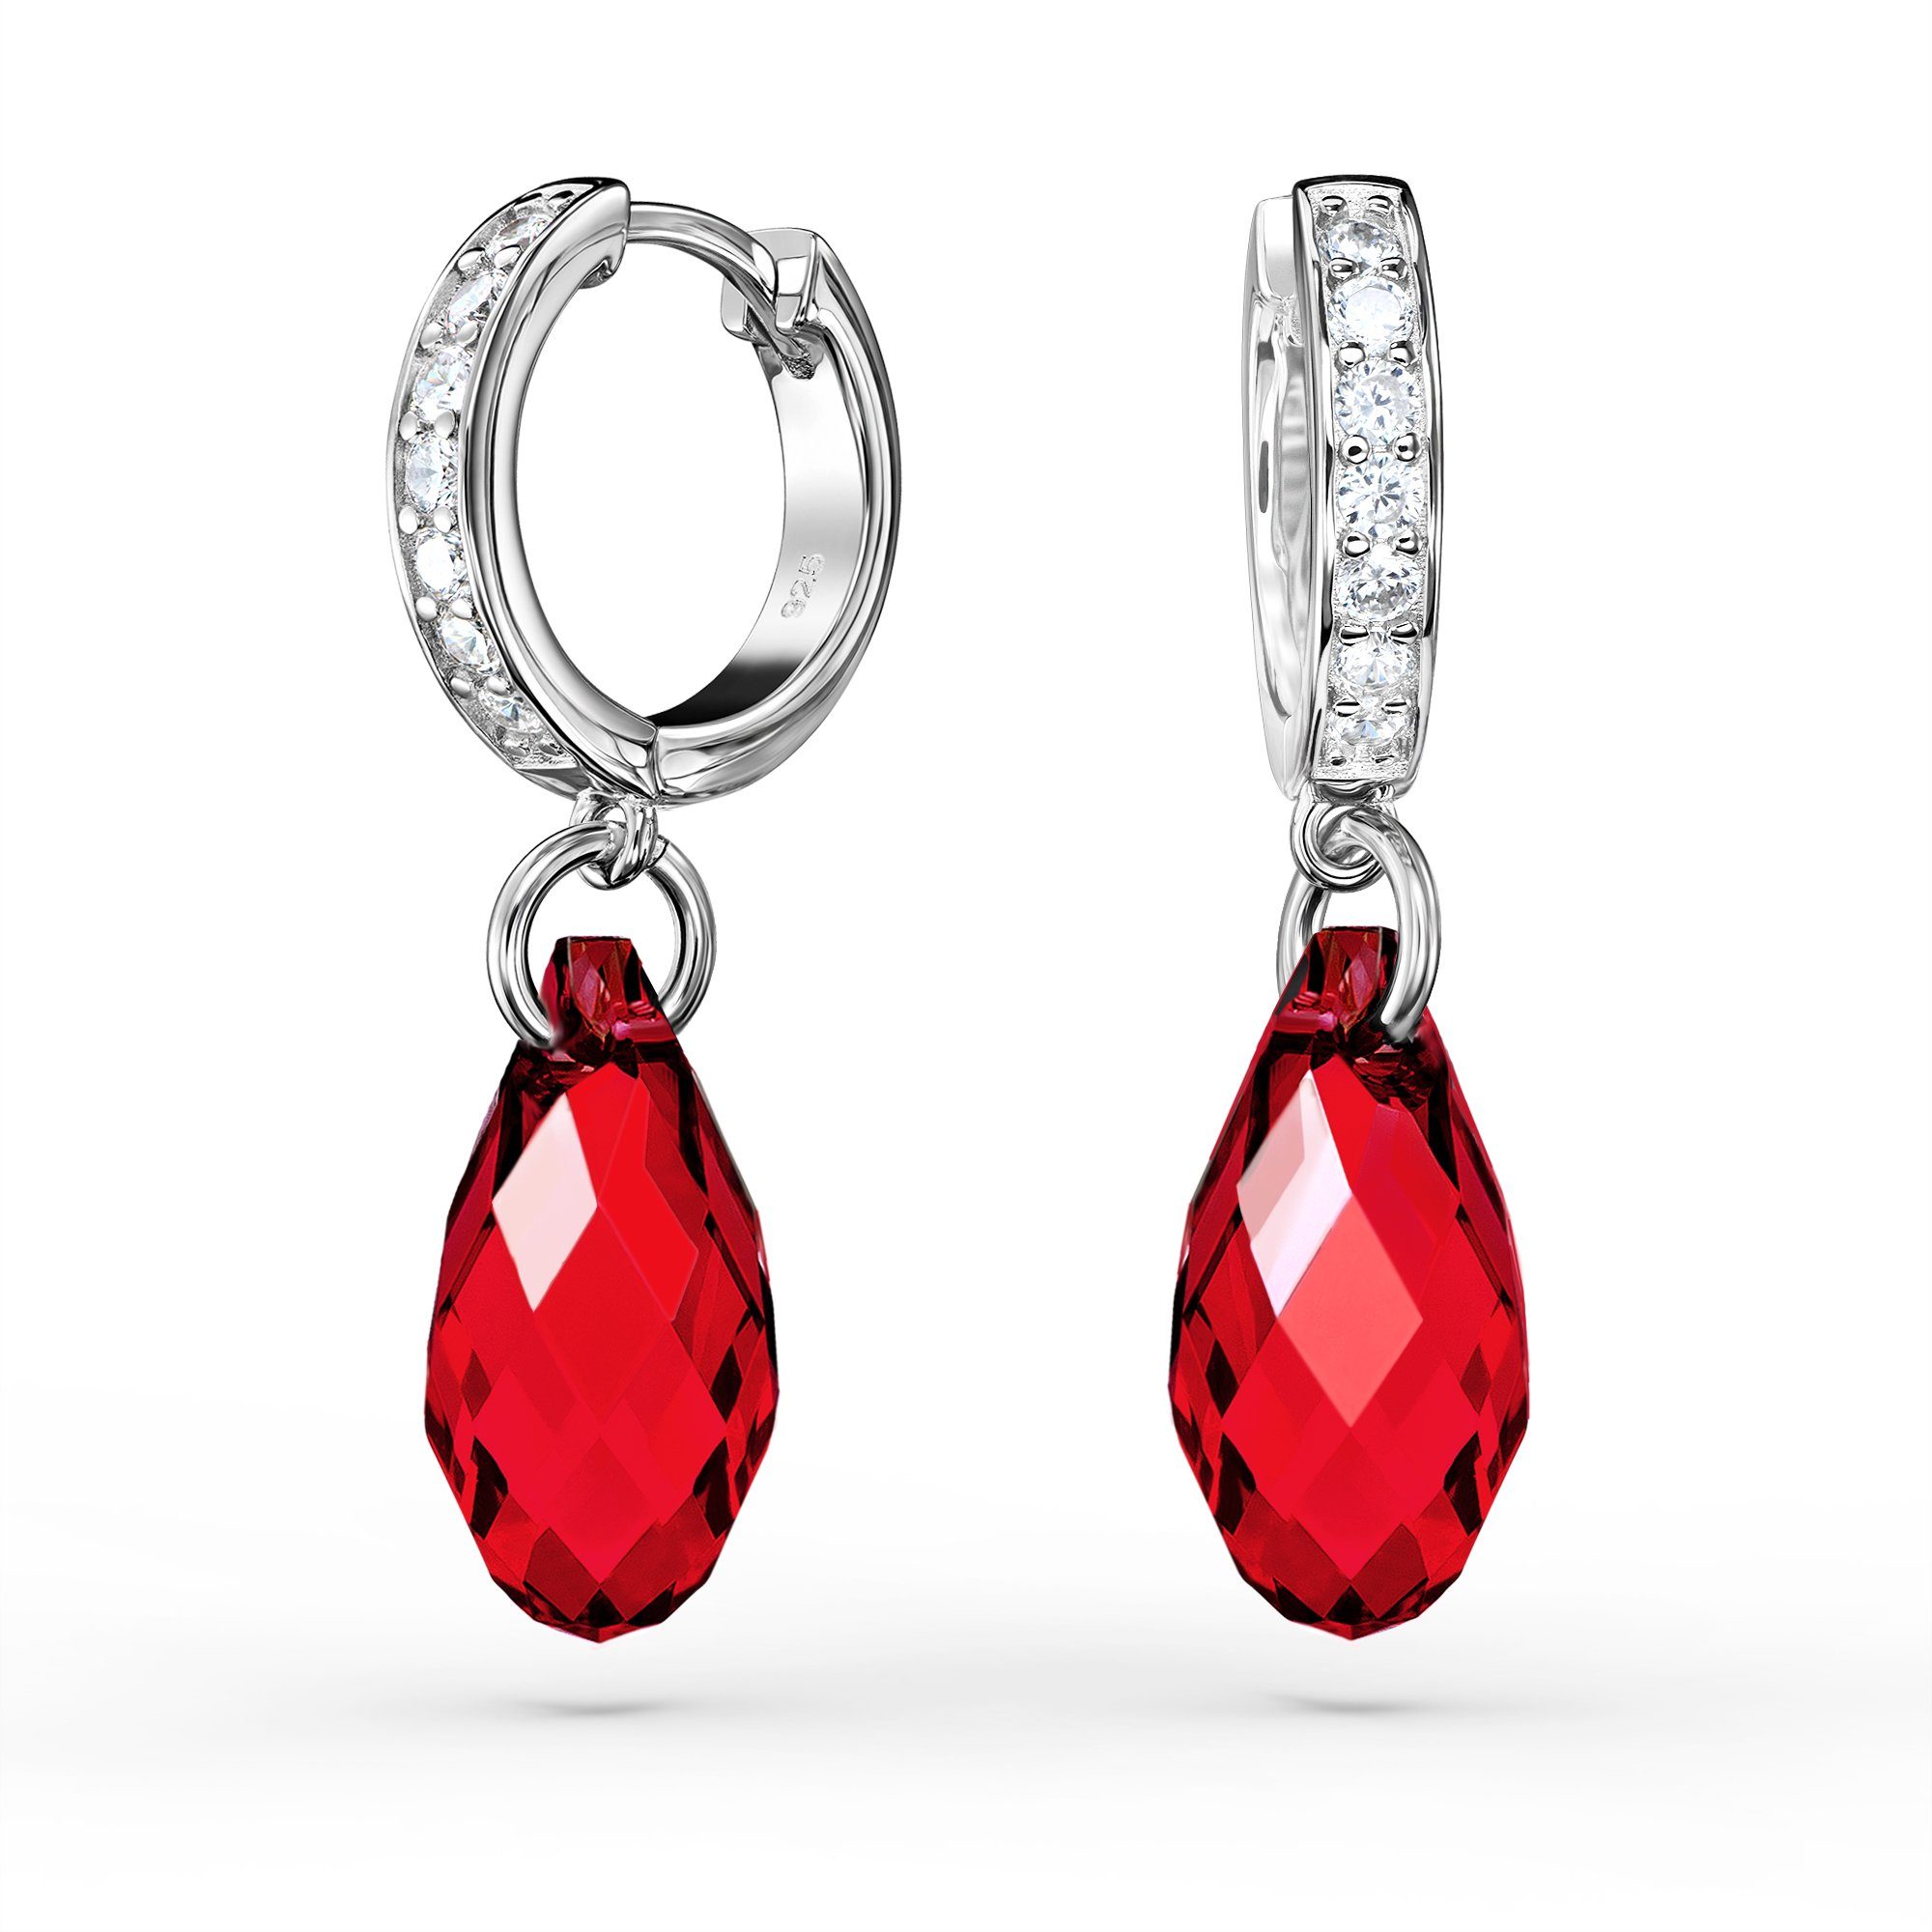 Schöner-SD Paar Ohrhänger Creolen Tropfen-Kristall 17mm Hängeohrringe Damen 925 Silber Rhodium, mit Markenkristall Scarlet Rot